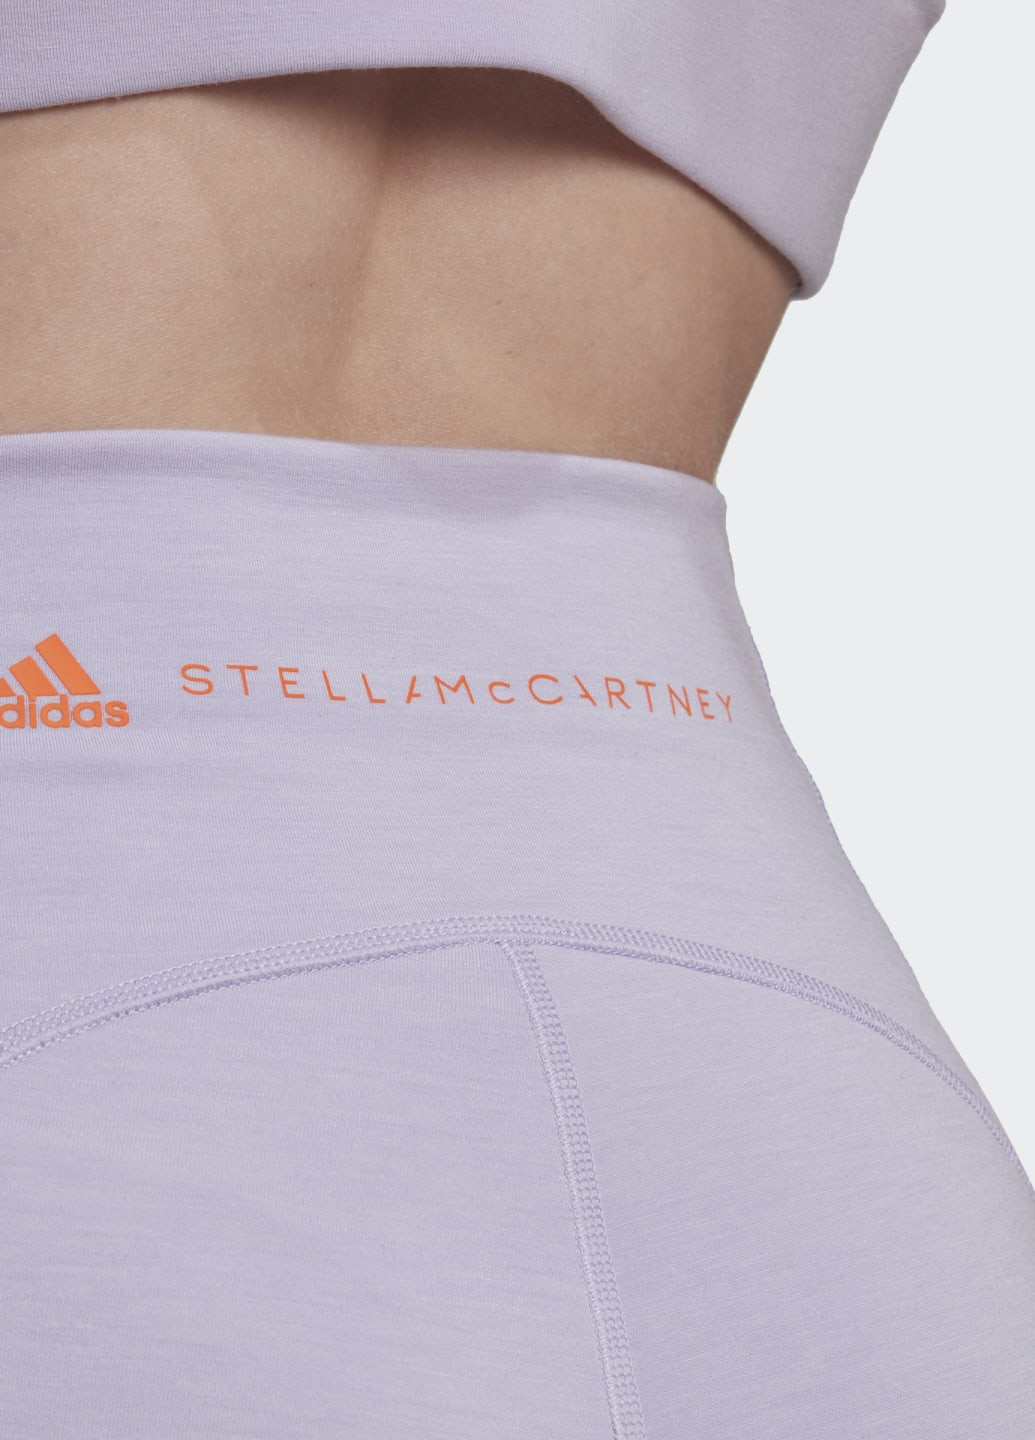 Фиолетовые демисезонные леггинсы by stella mccartney truestrength yoga adidas